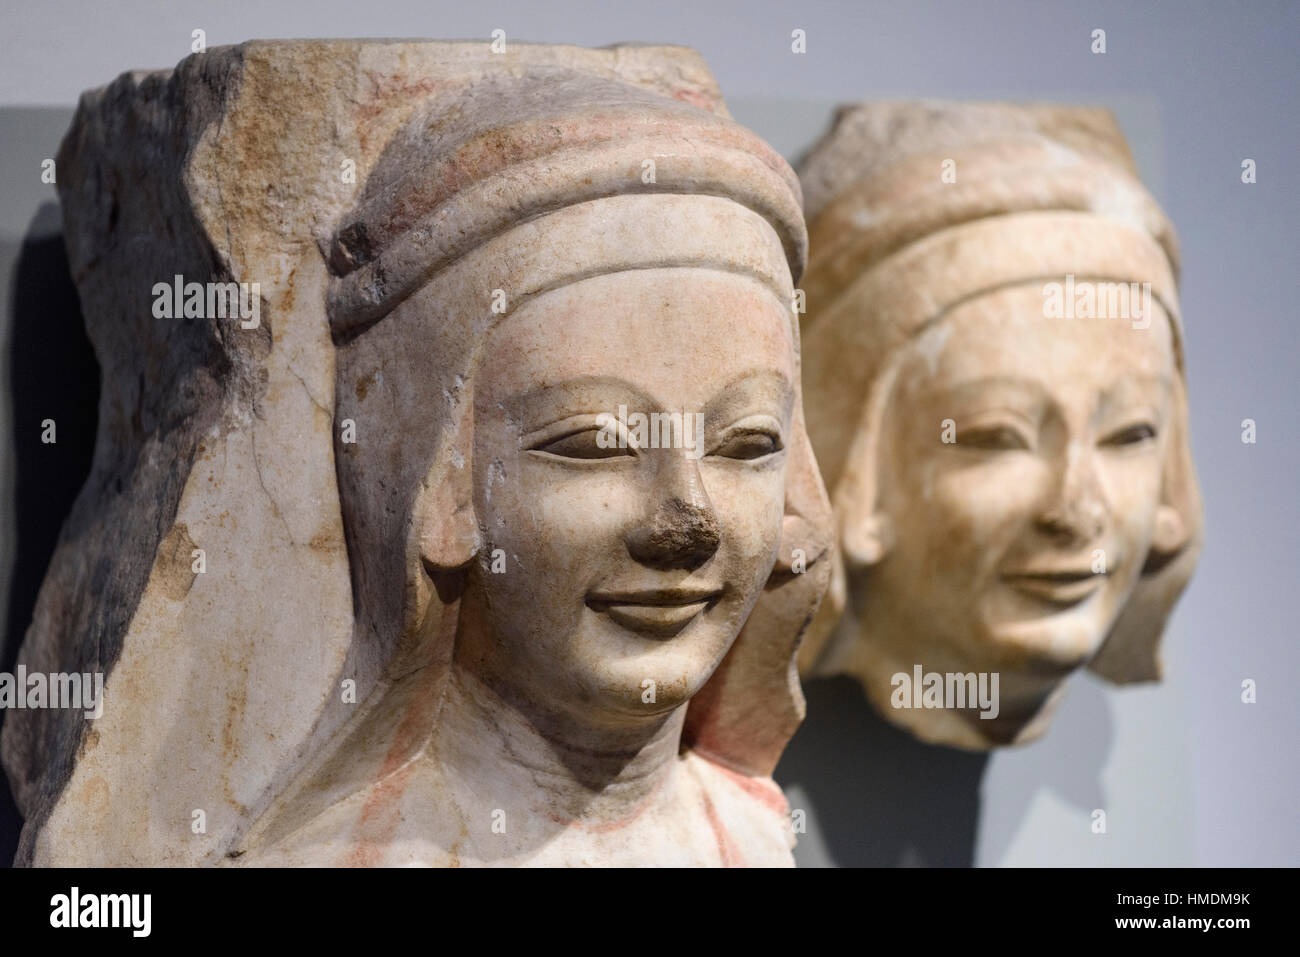 Berlín. Alemania. Fragmentos escultóricos de mujeres jóvenes en alto relieve de la columna Caelata, Didyma (Turquía), el templo de Apolo, mármol, 540-530 A.C. Un Foto de stock